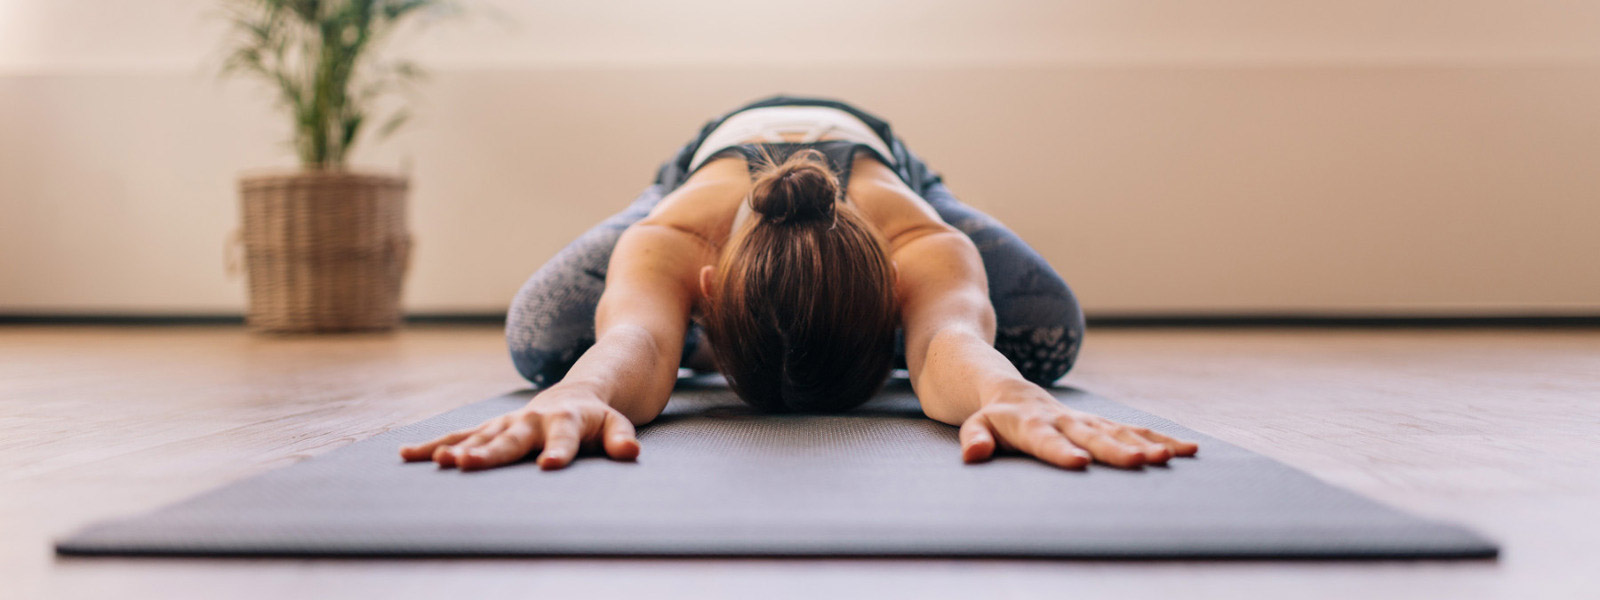 Yoga contro il mal di schiena - La donna inondato ha messo la testa in avanti tra le braccia sul tappeto